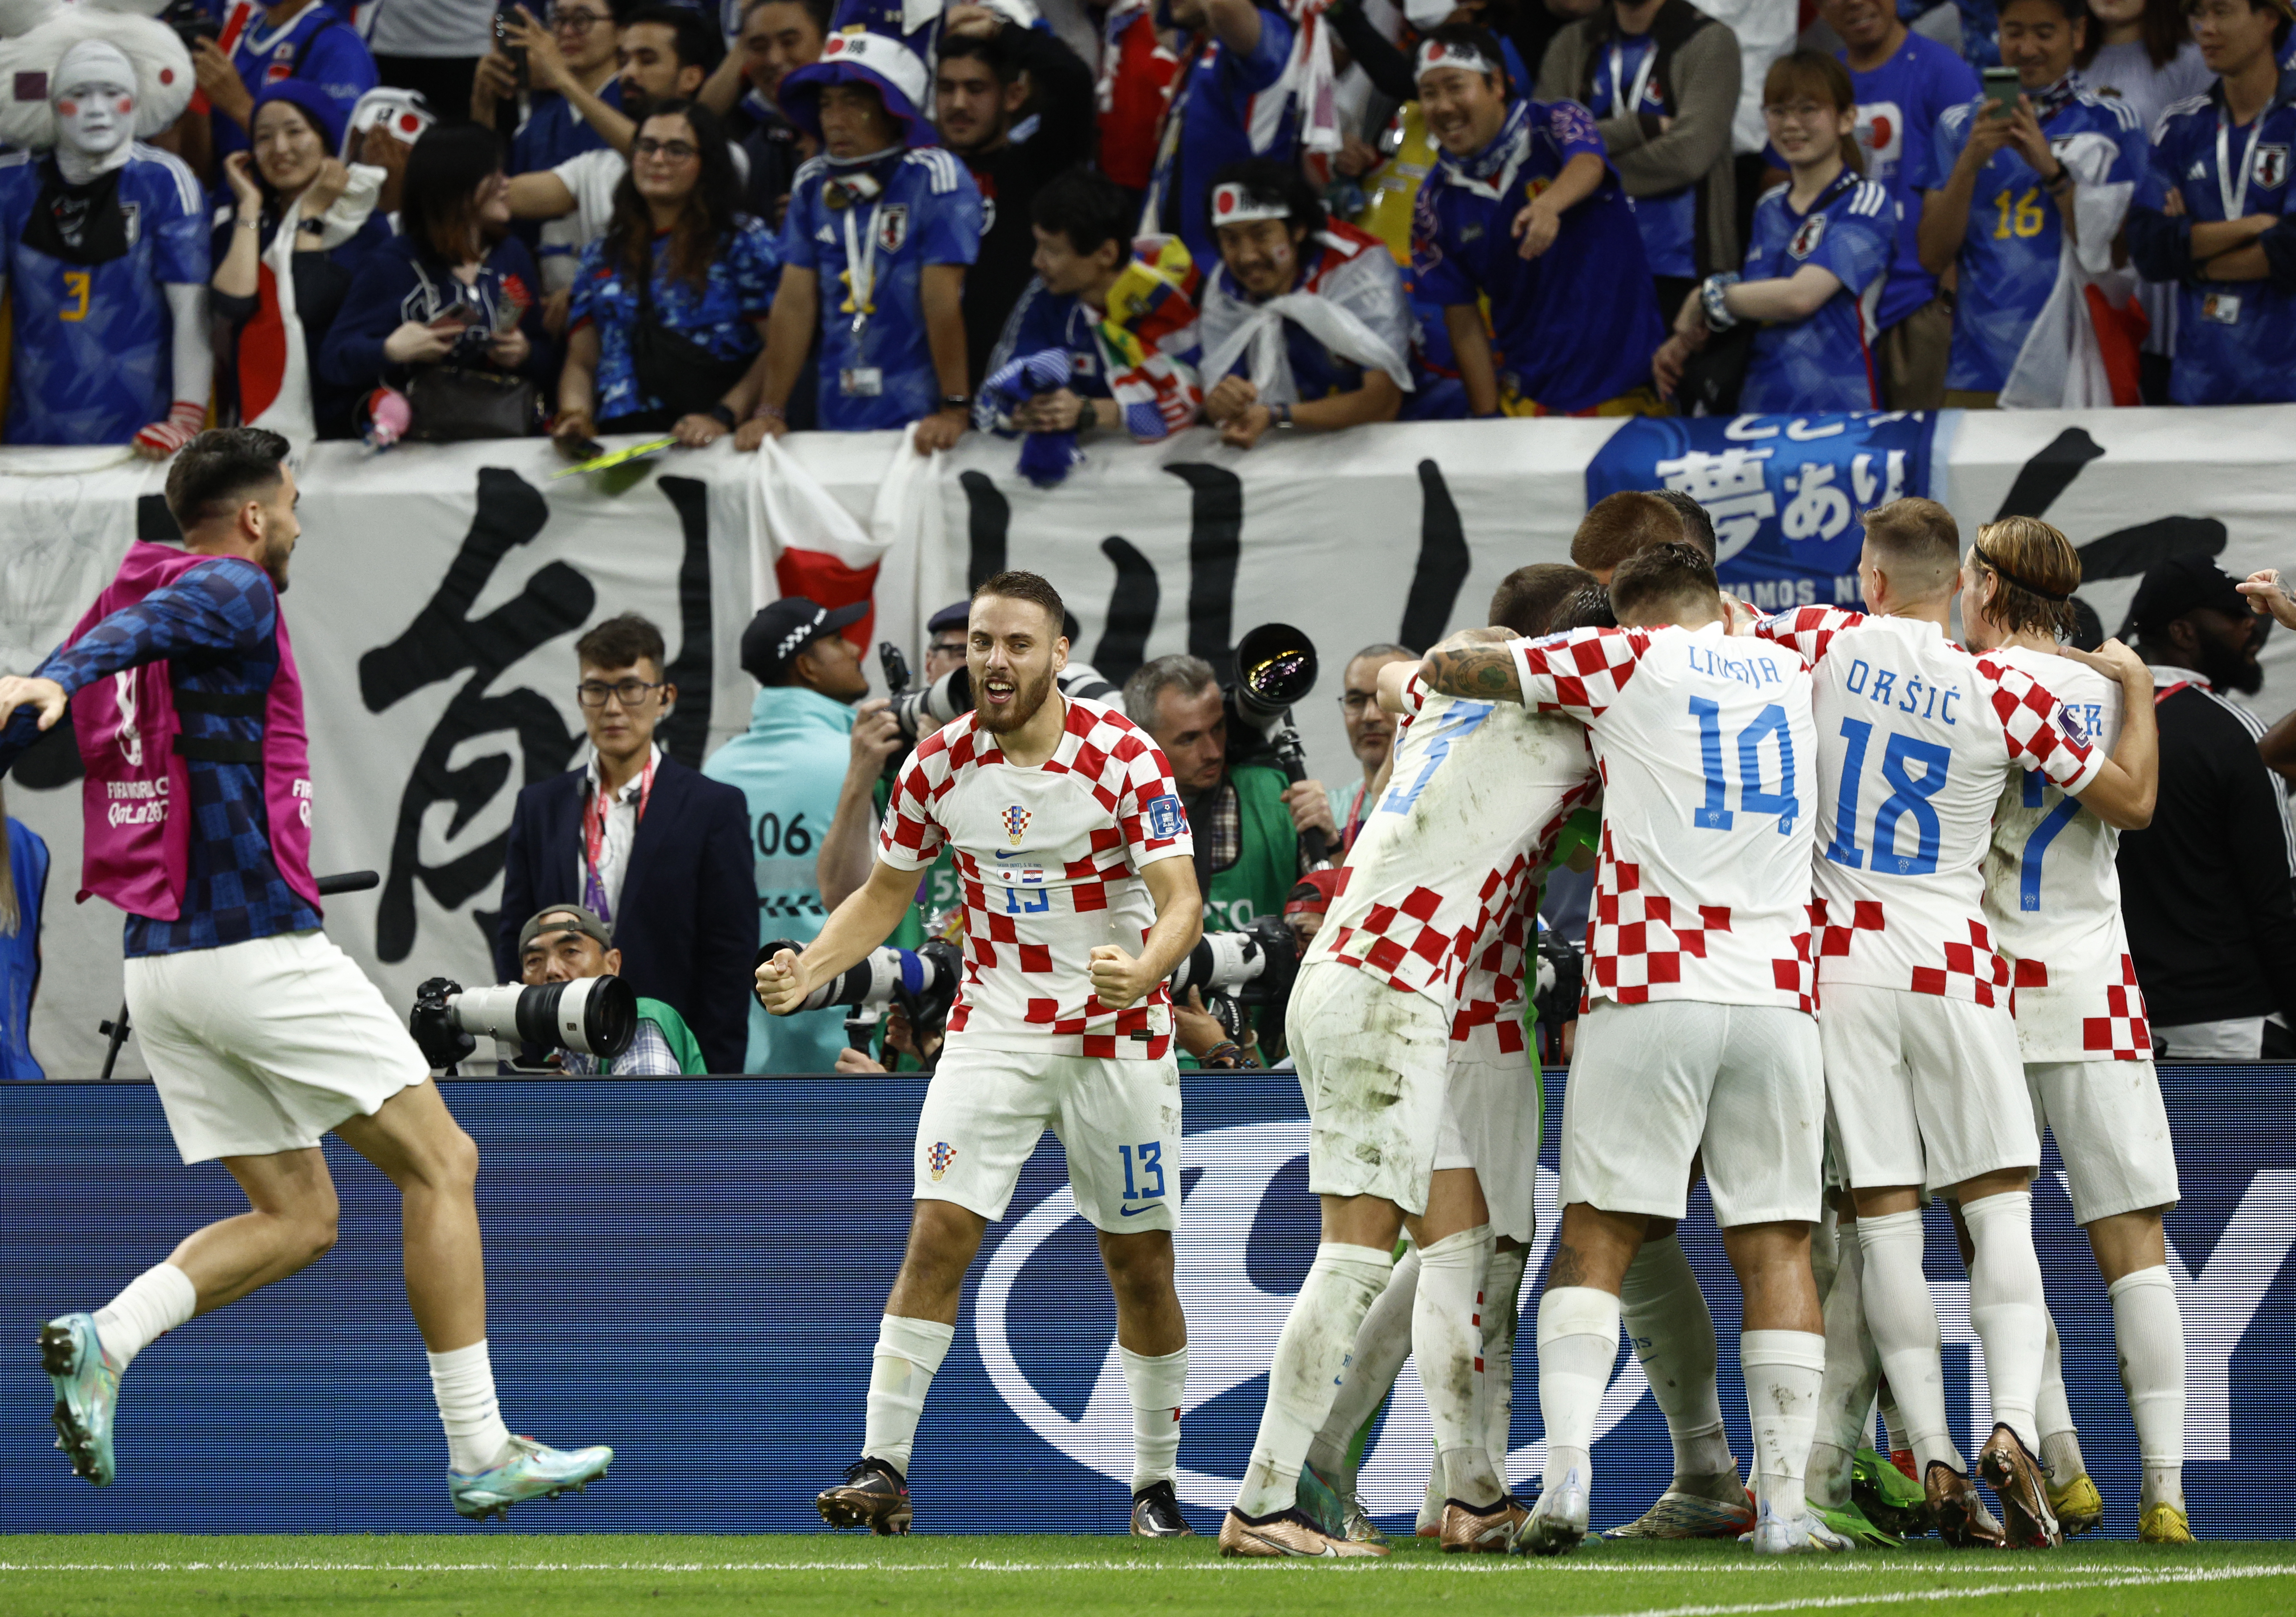 El efusivo festejo de Croacia tras derrotar en penaltis a Japón, una de las Selecciones más complicadas del Mundial. (Foto Prensa Libre: EFE)